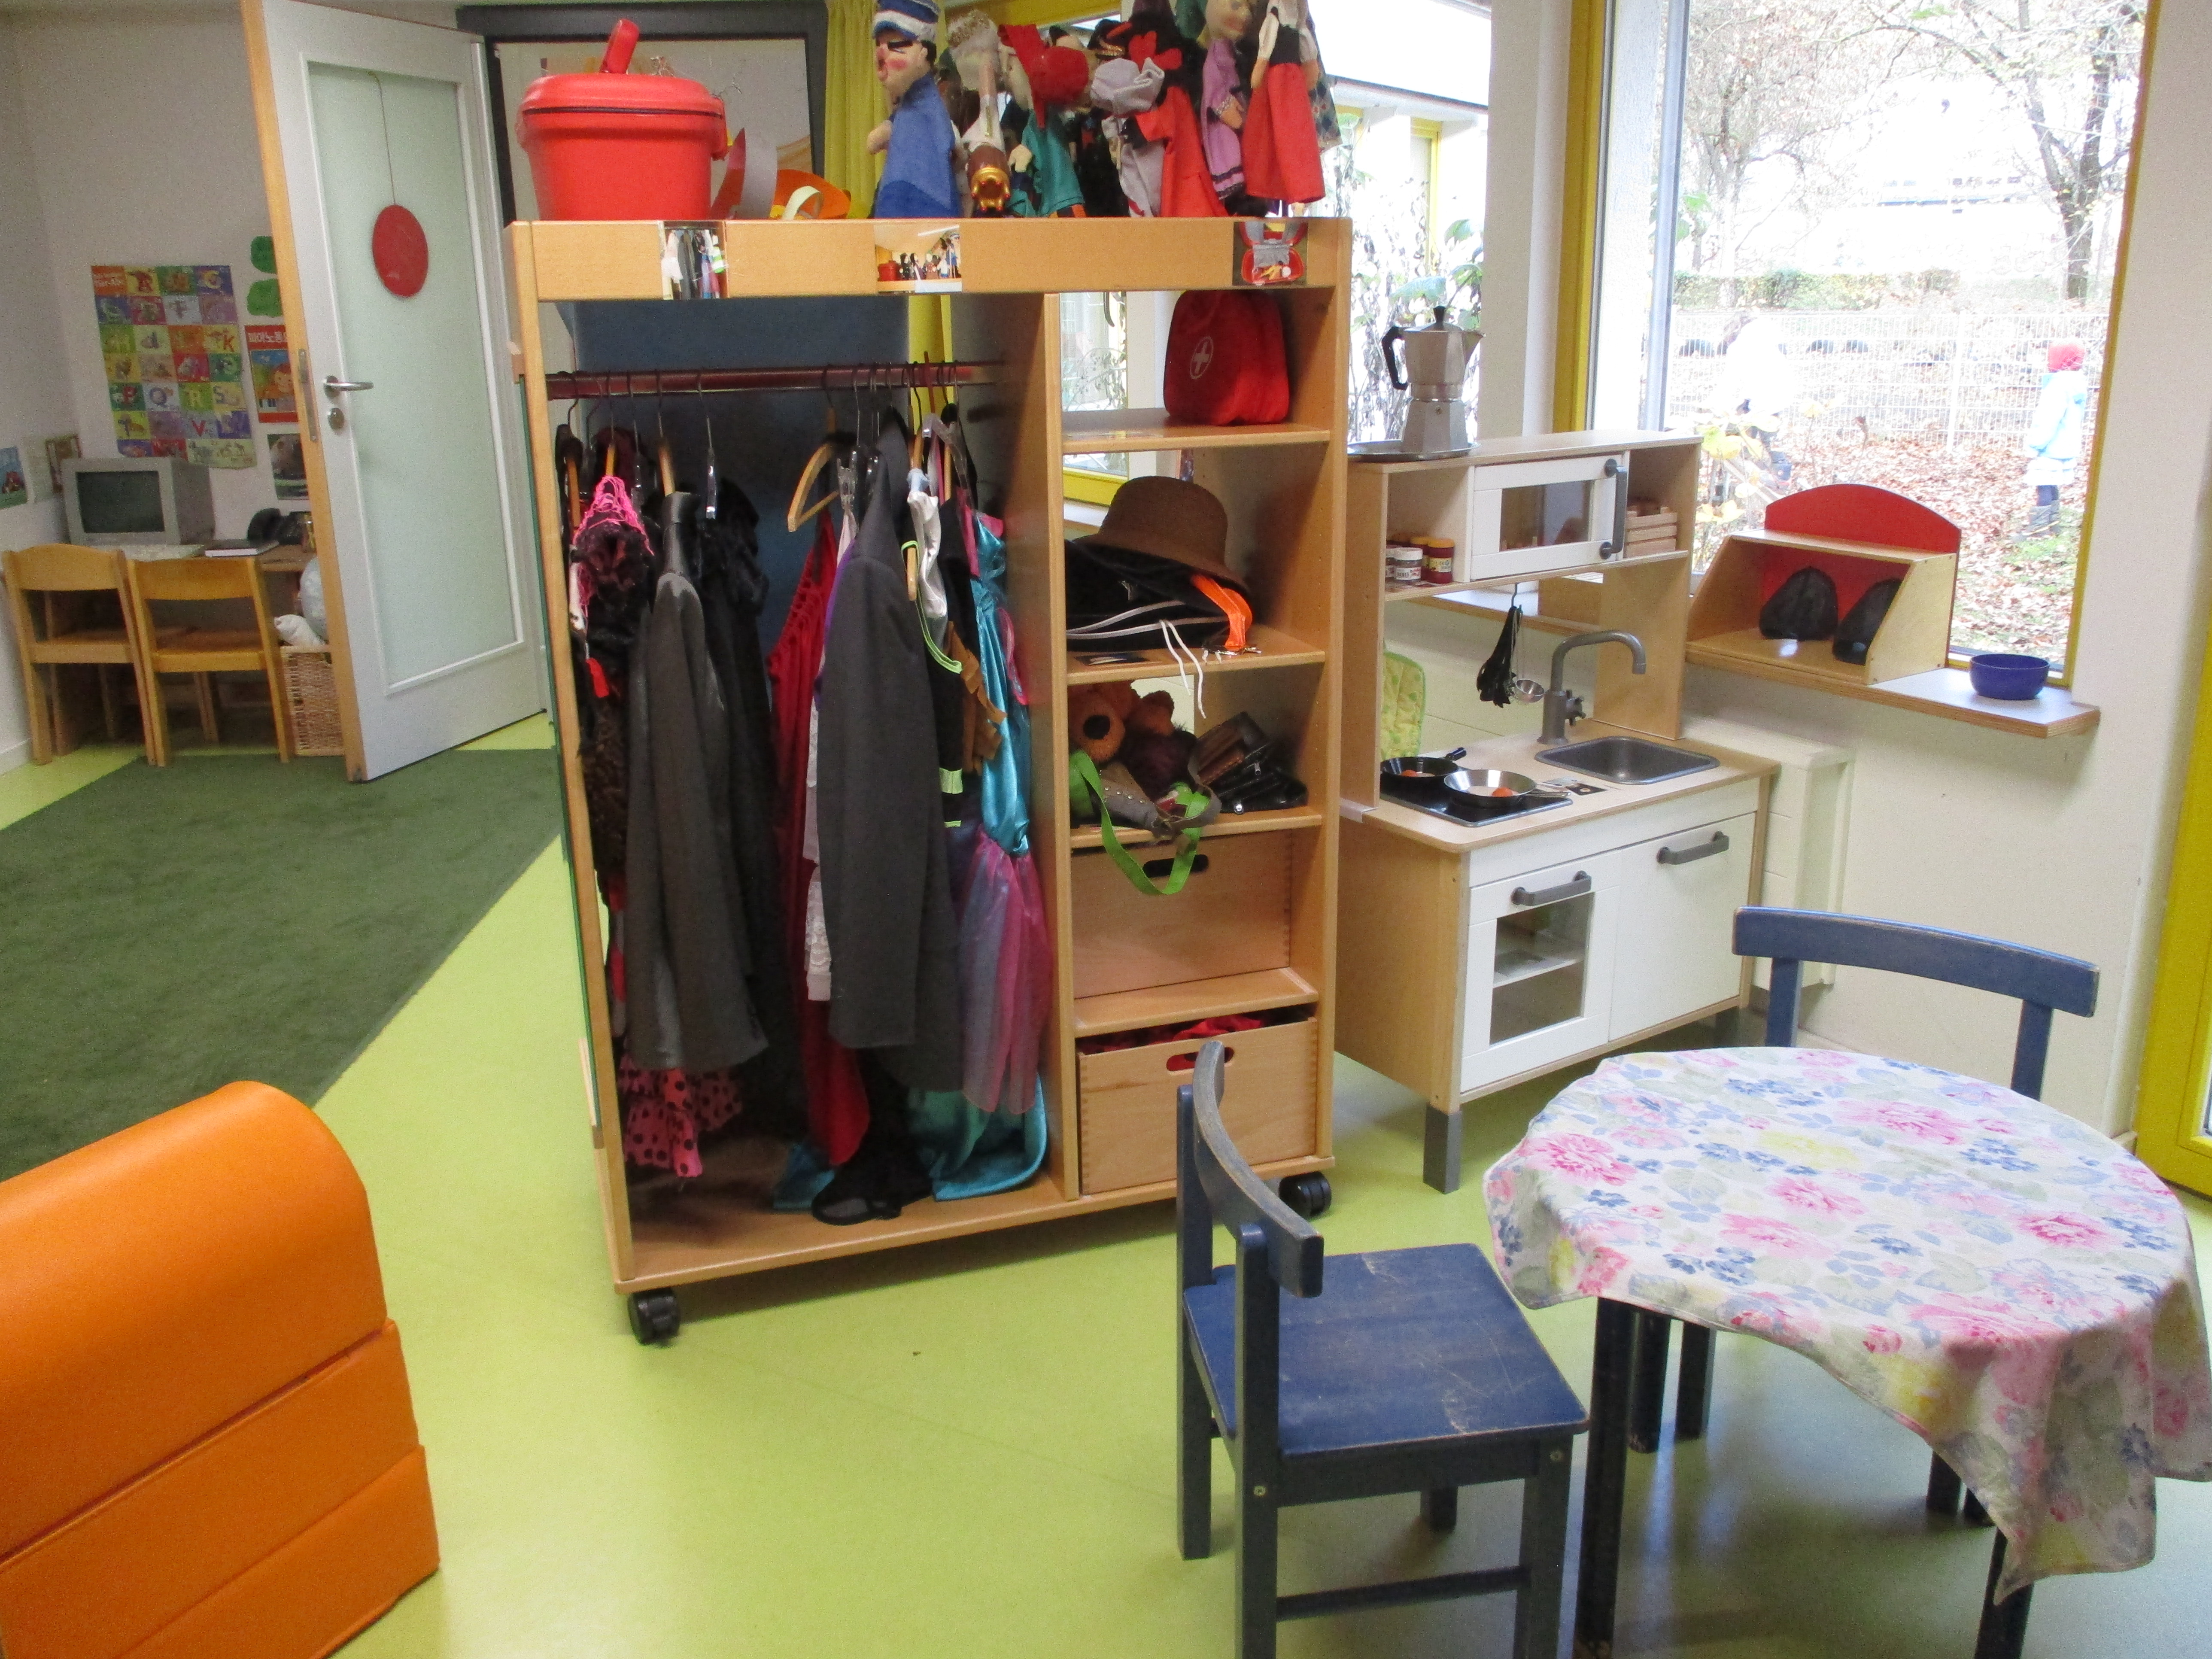 Das Bild zeigt den Rollenspielbereich im Kinderhaus Feuerhägle. Es ist eine Kinderküche, Verkleidungen und ein kleiner runder Tisch zu erkennen.